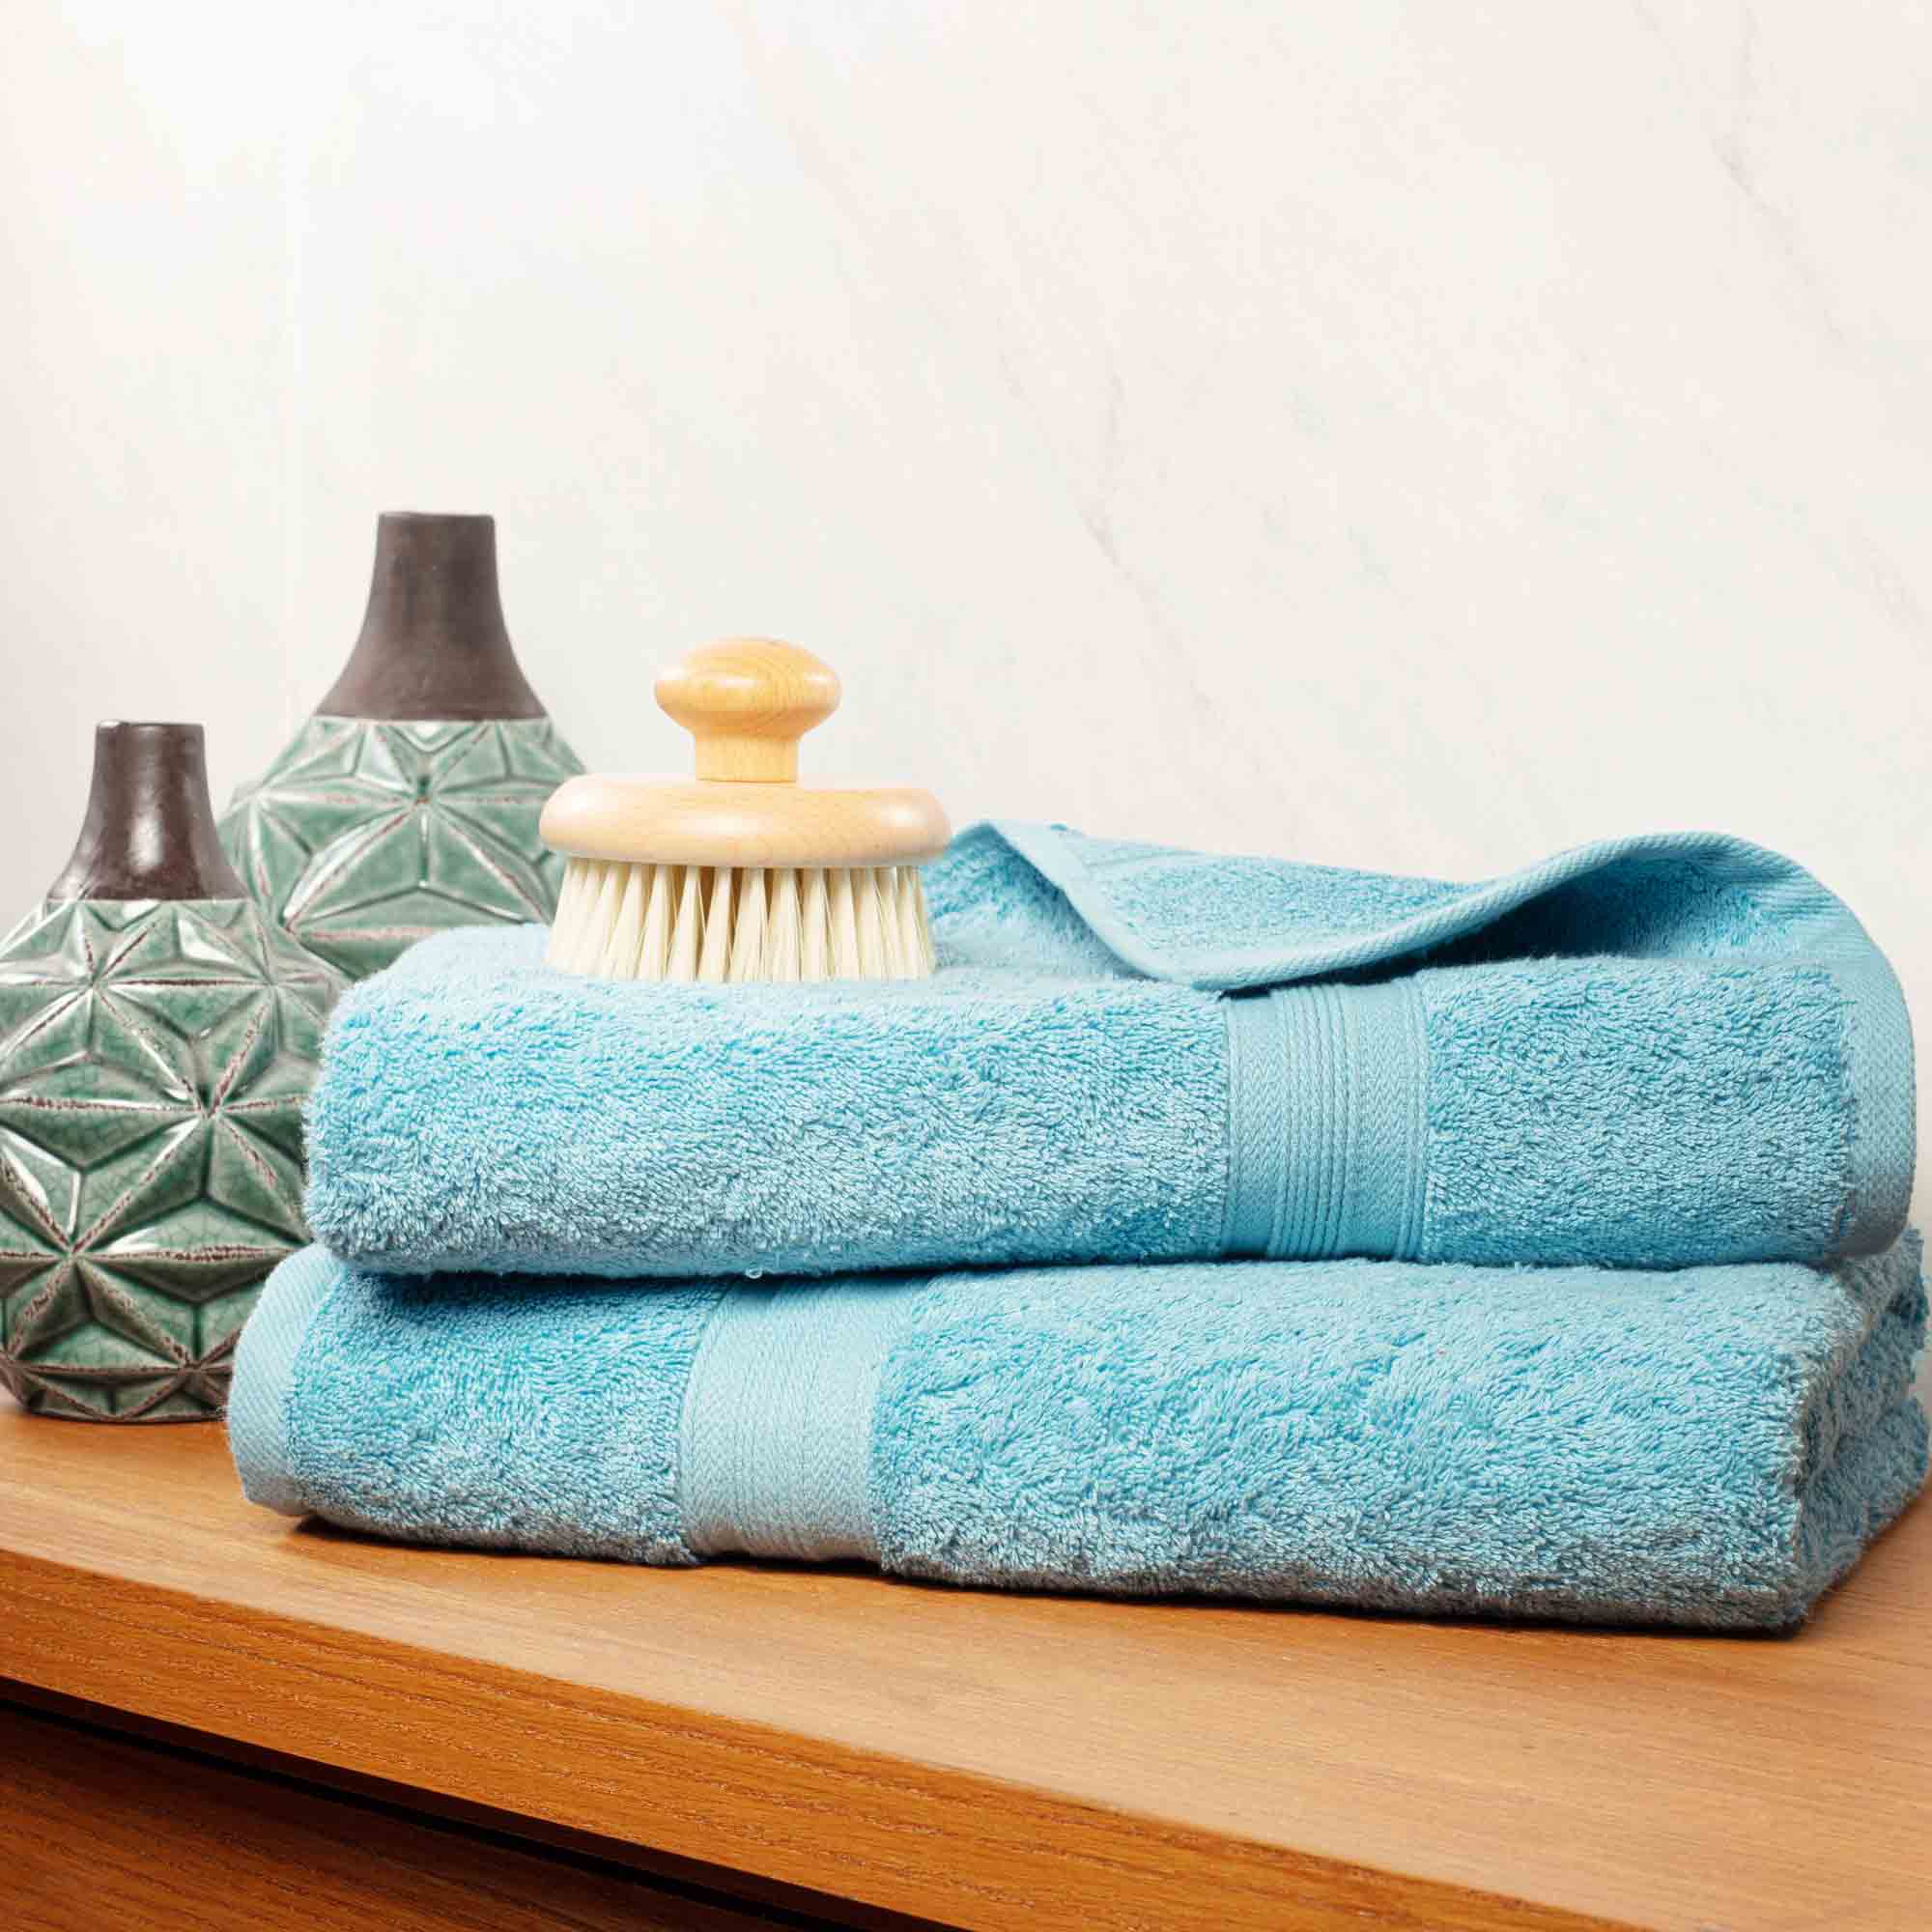 Bourgeois - 2 Piece Bath Towel Set